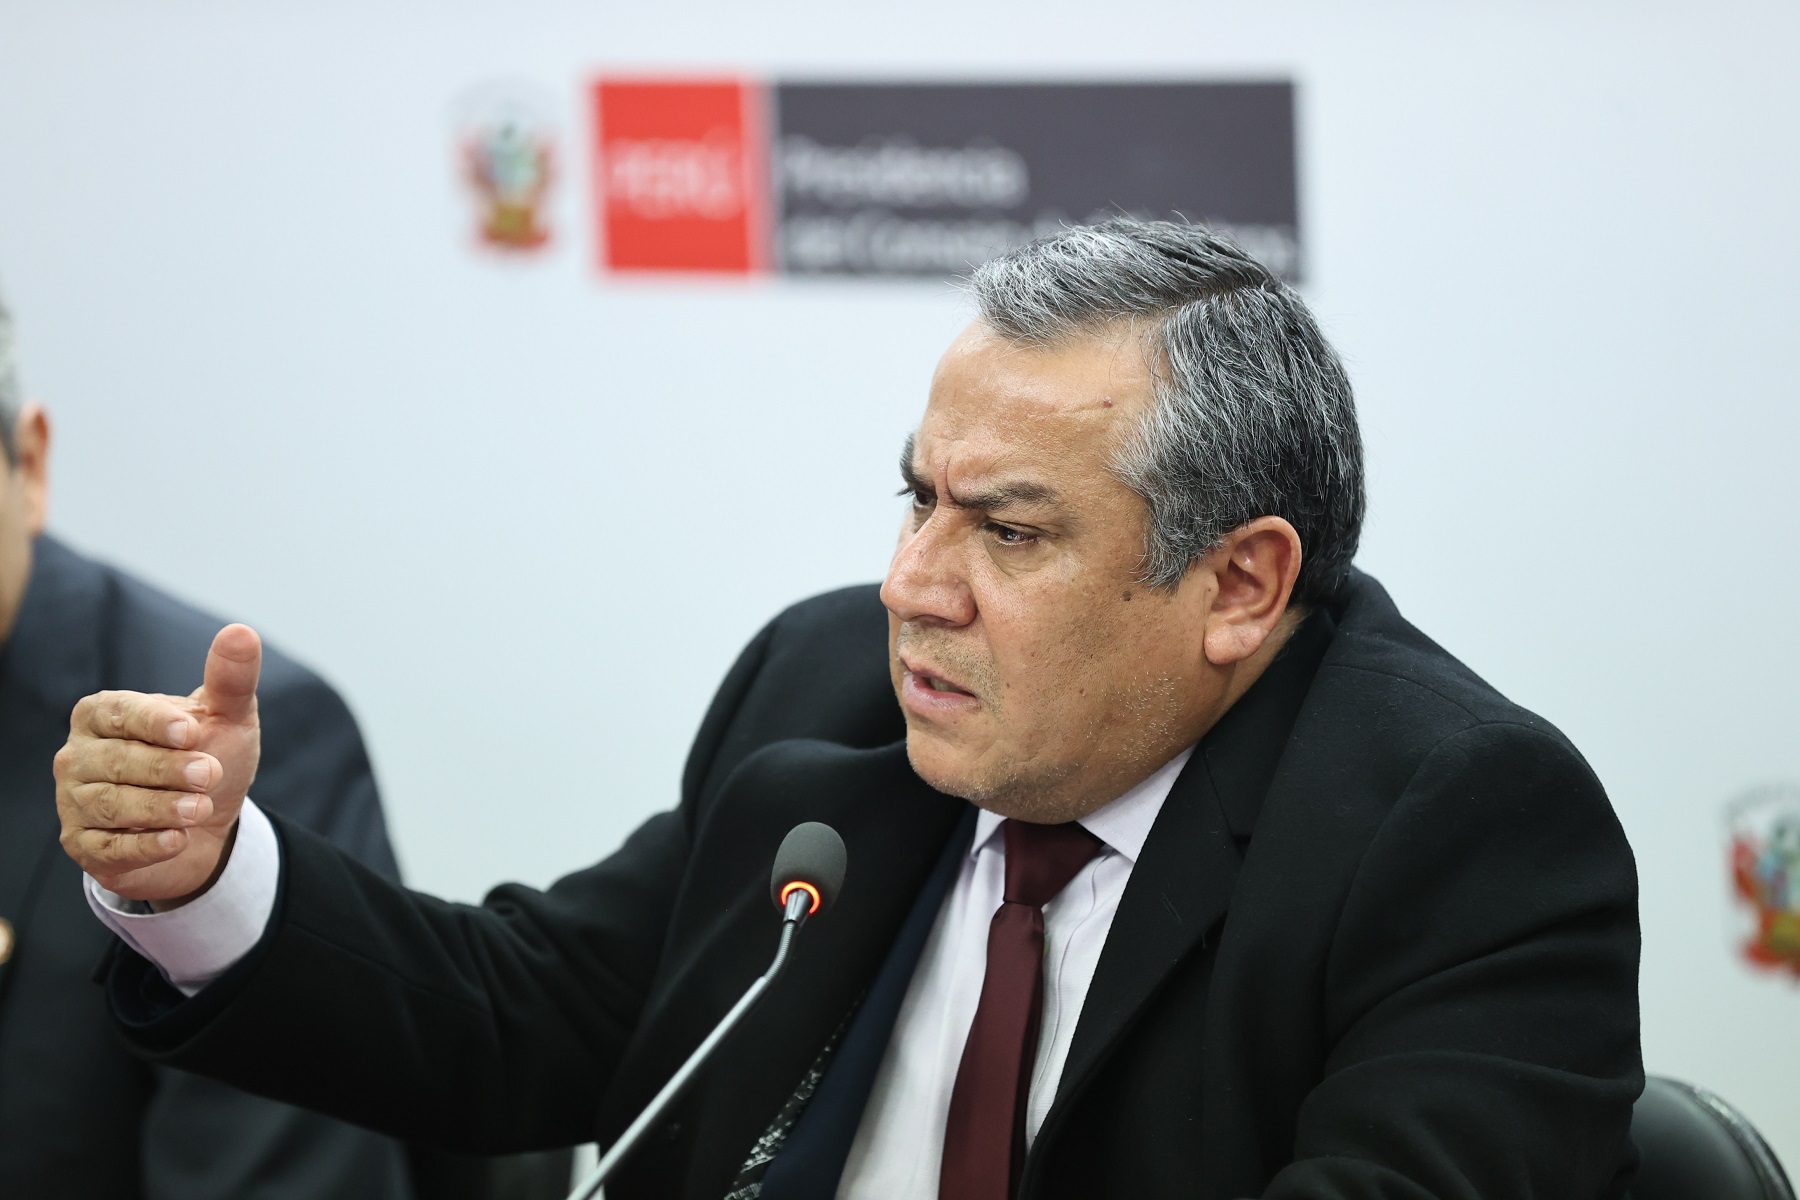 Gustavo Adrianzén: Ejecutivo coordinará respuesta conjunta de poderes del Estado a resolución de la Corte IDH que afecta soberanía del Perú.